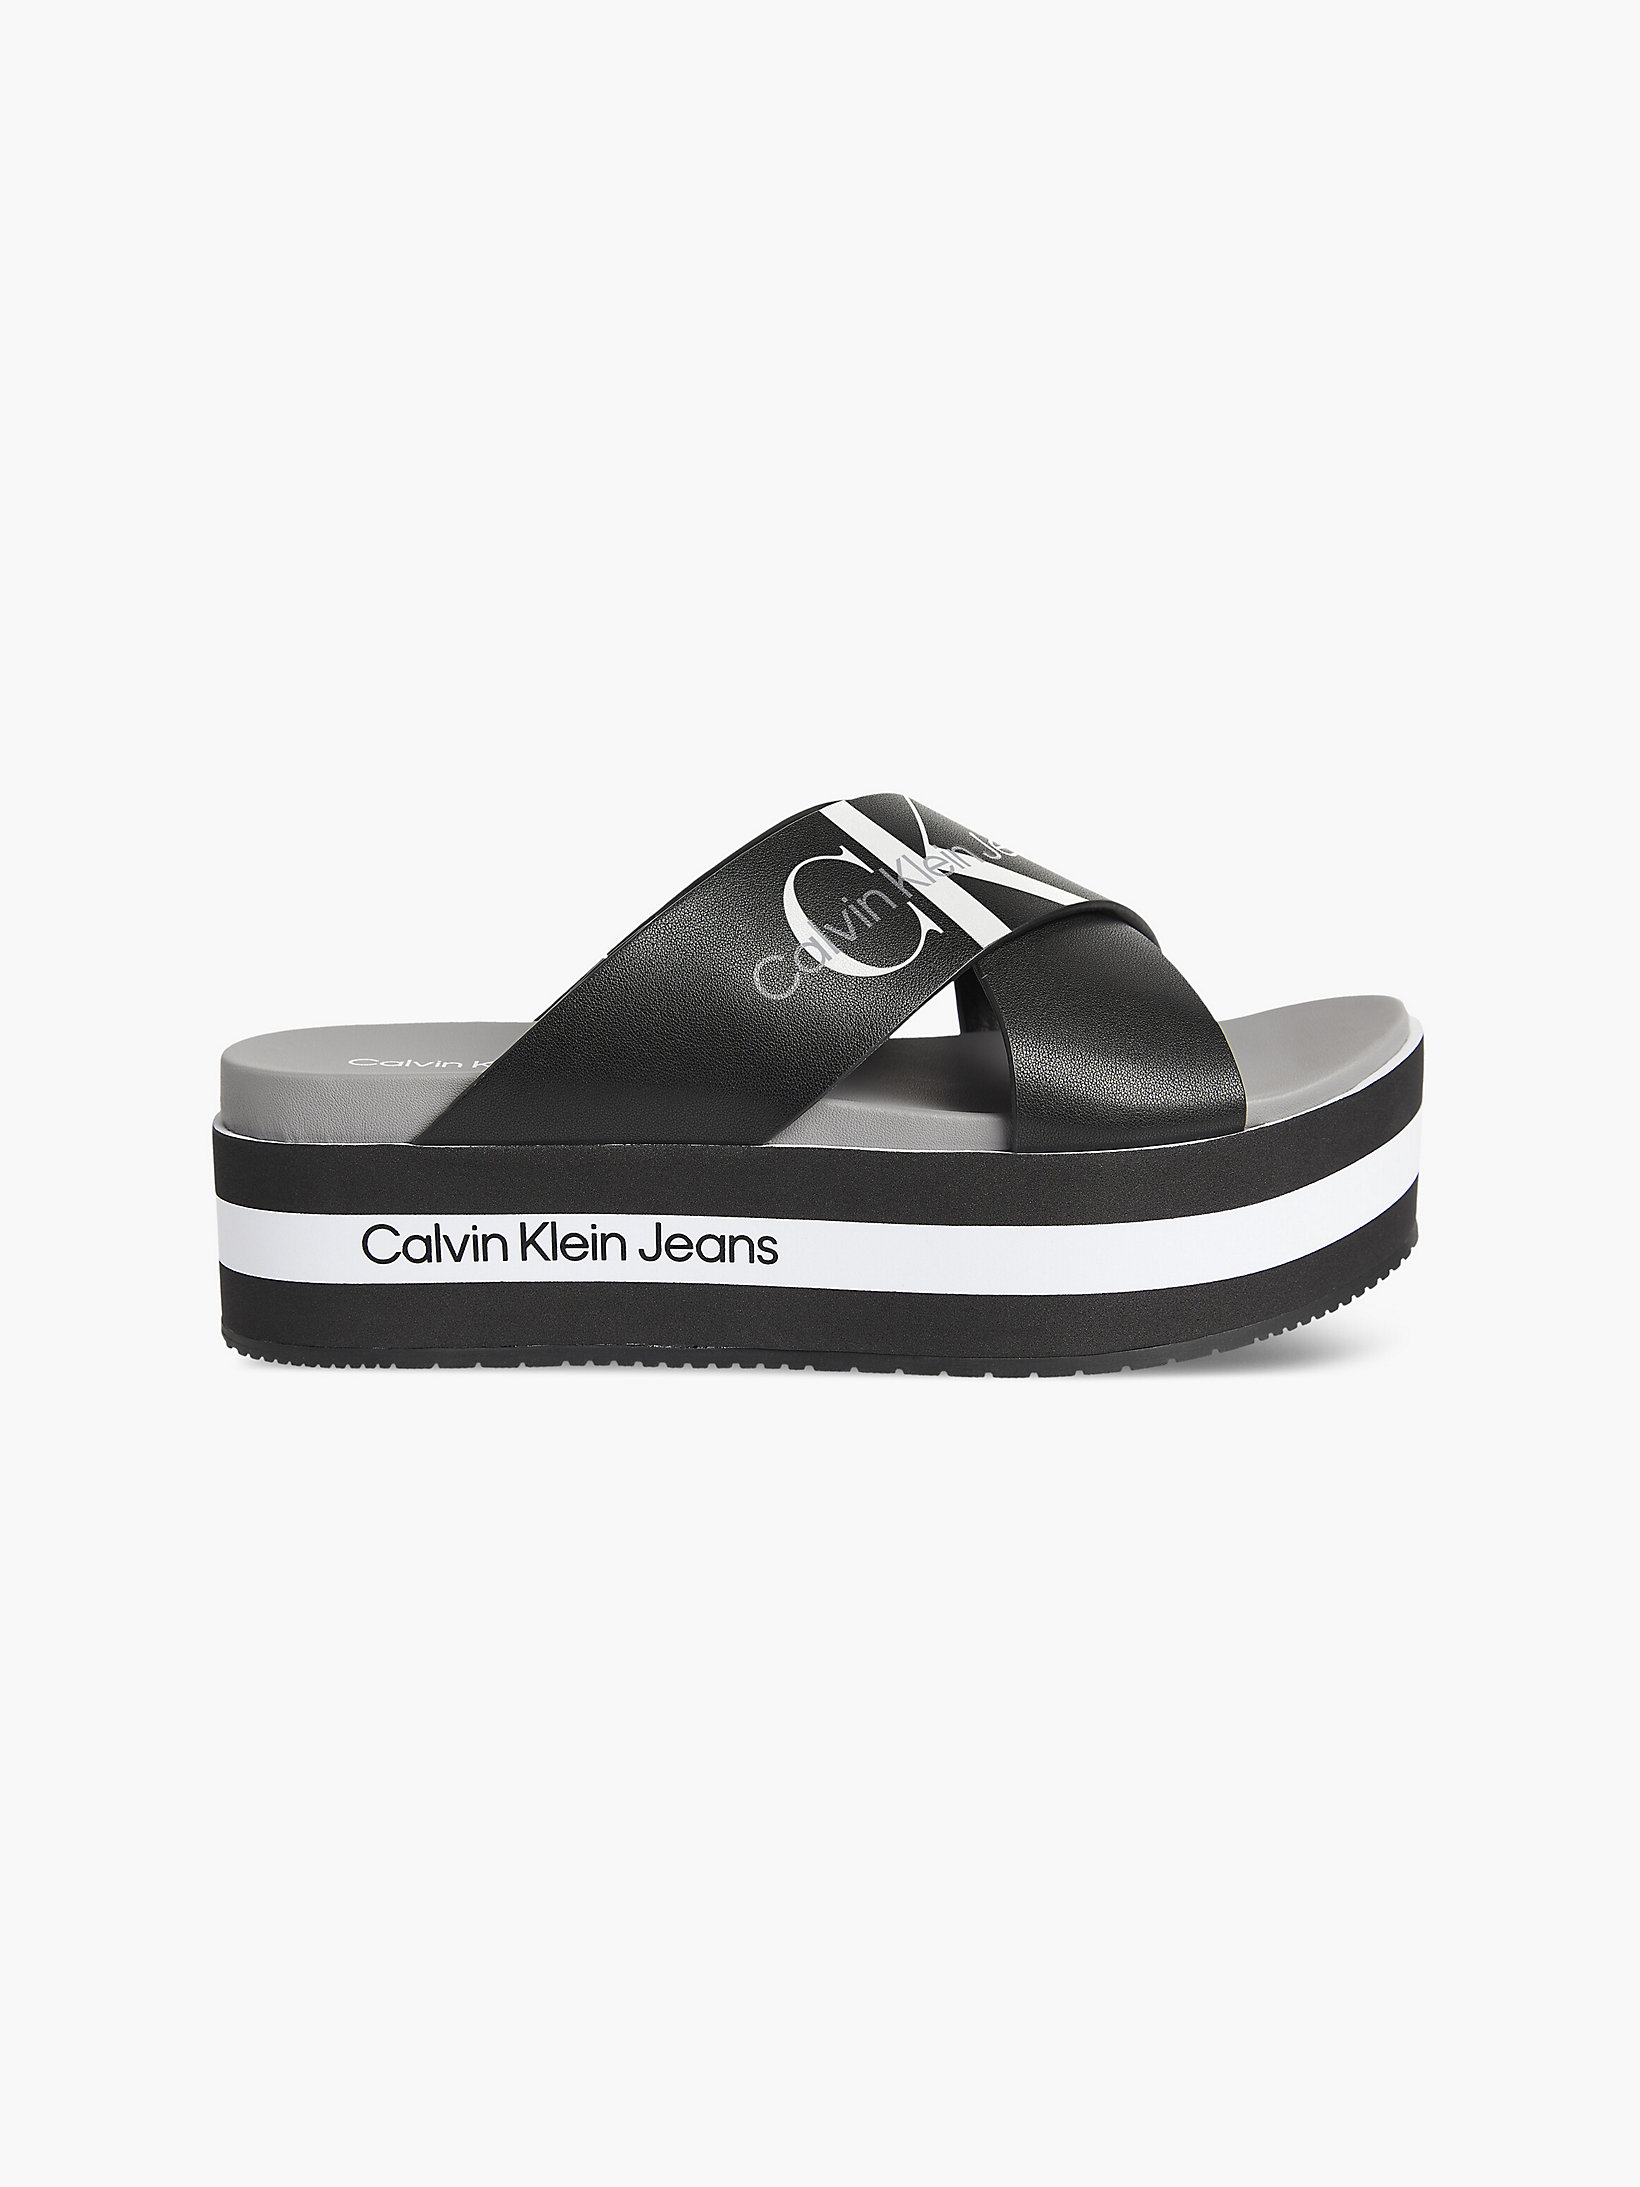 Black > Кожаные сандалии на платформе > undefined Женщины - Calvin Klein